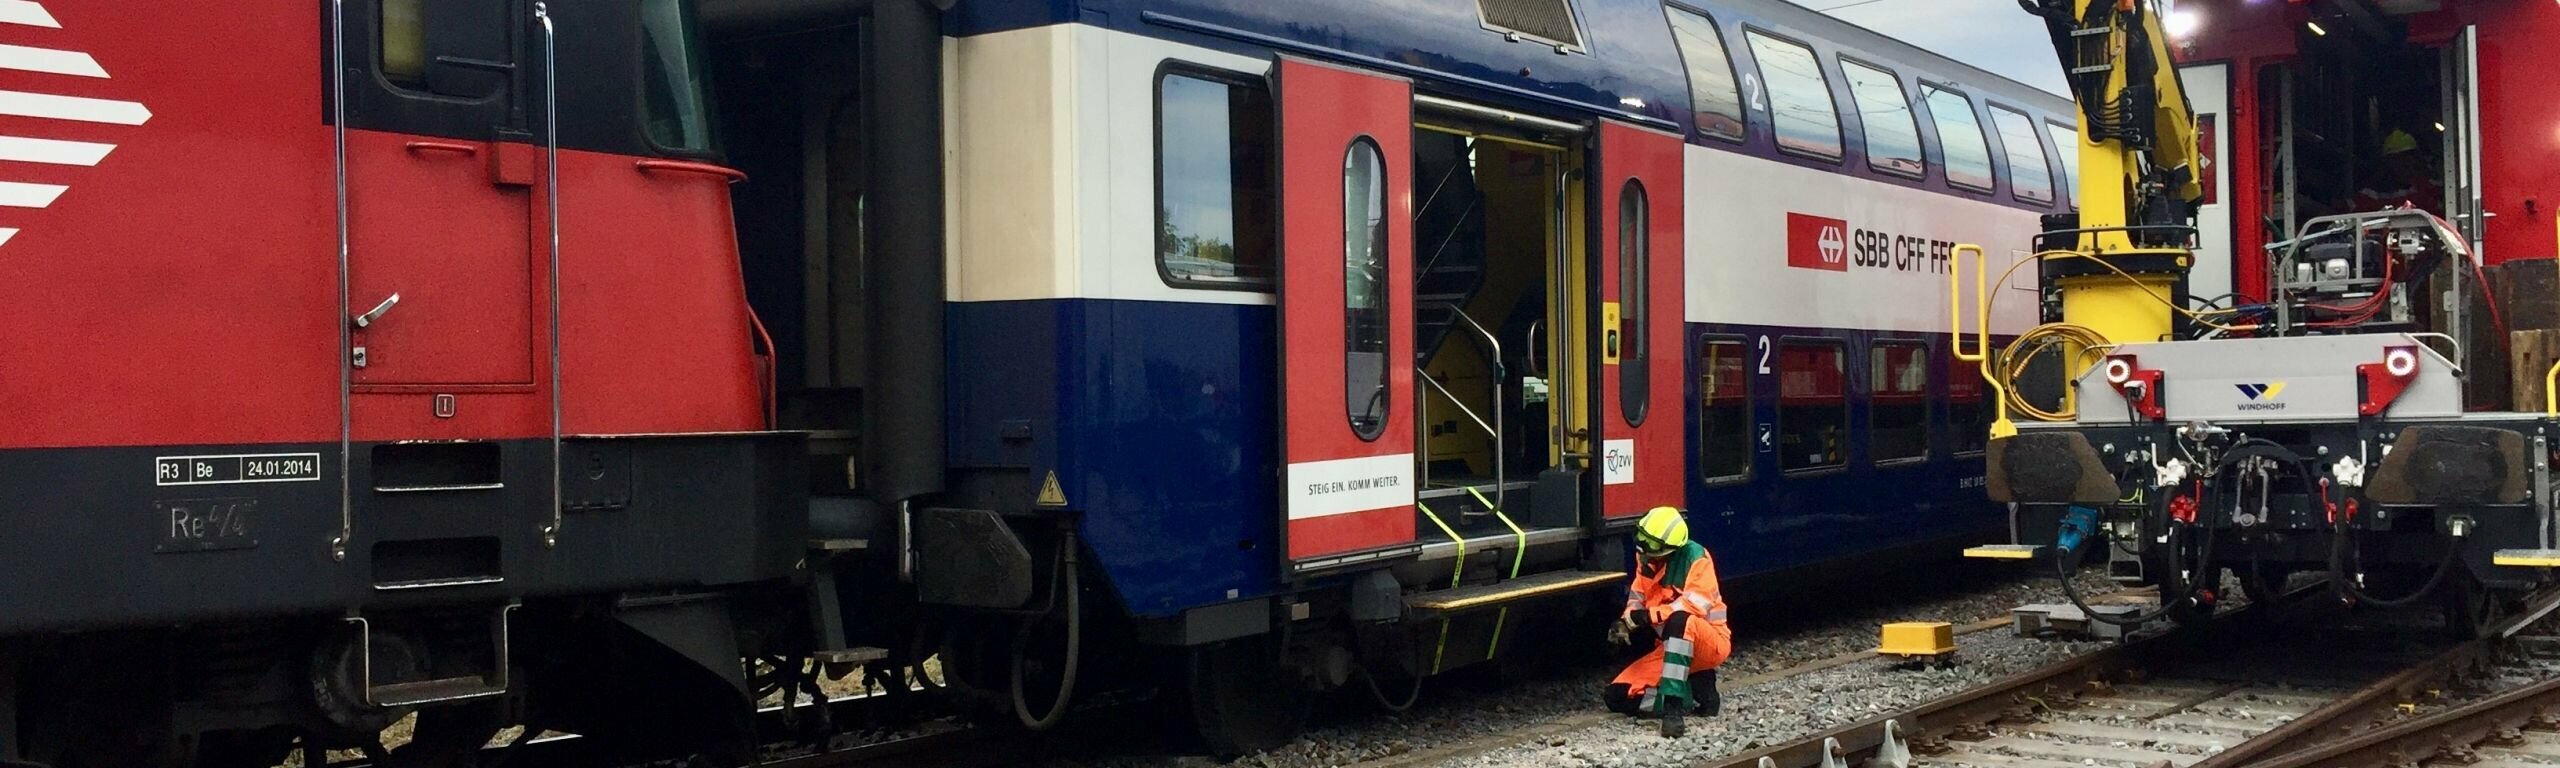 Zwei leere S-Bahnen im Abstellfeld in Zürich Herdern kollidiert